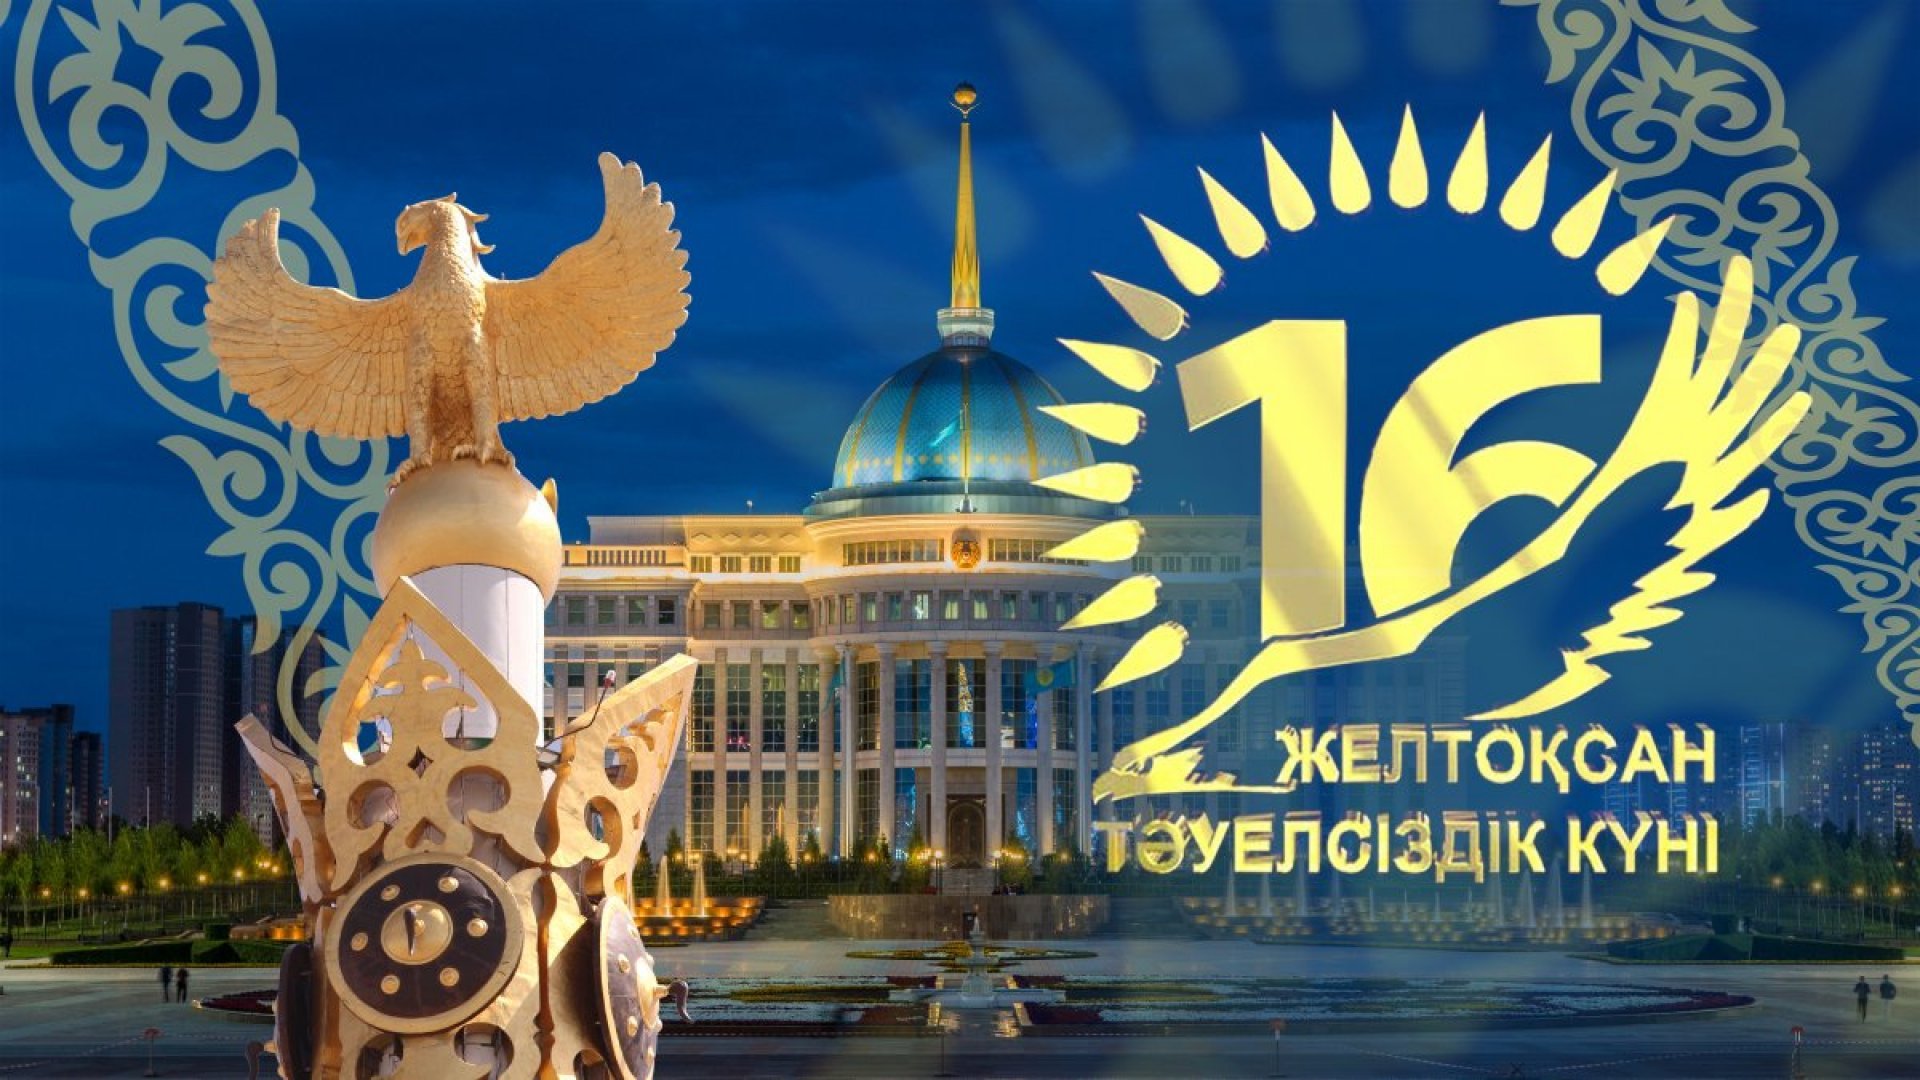 Открытки с днём независимости Казахстана